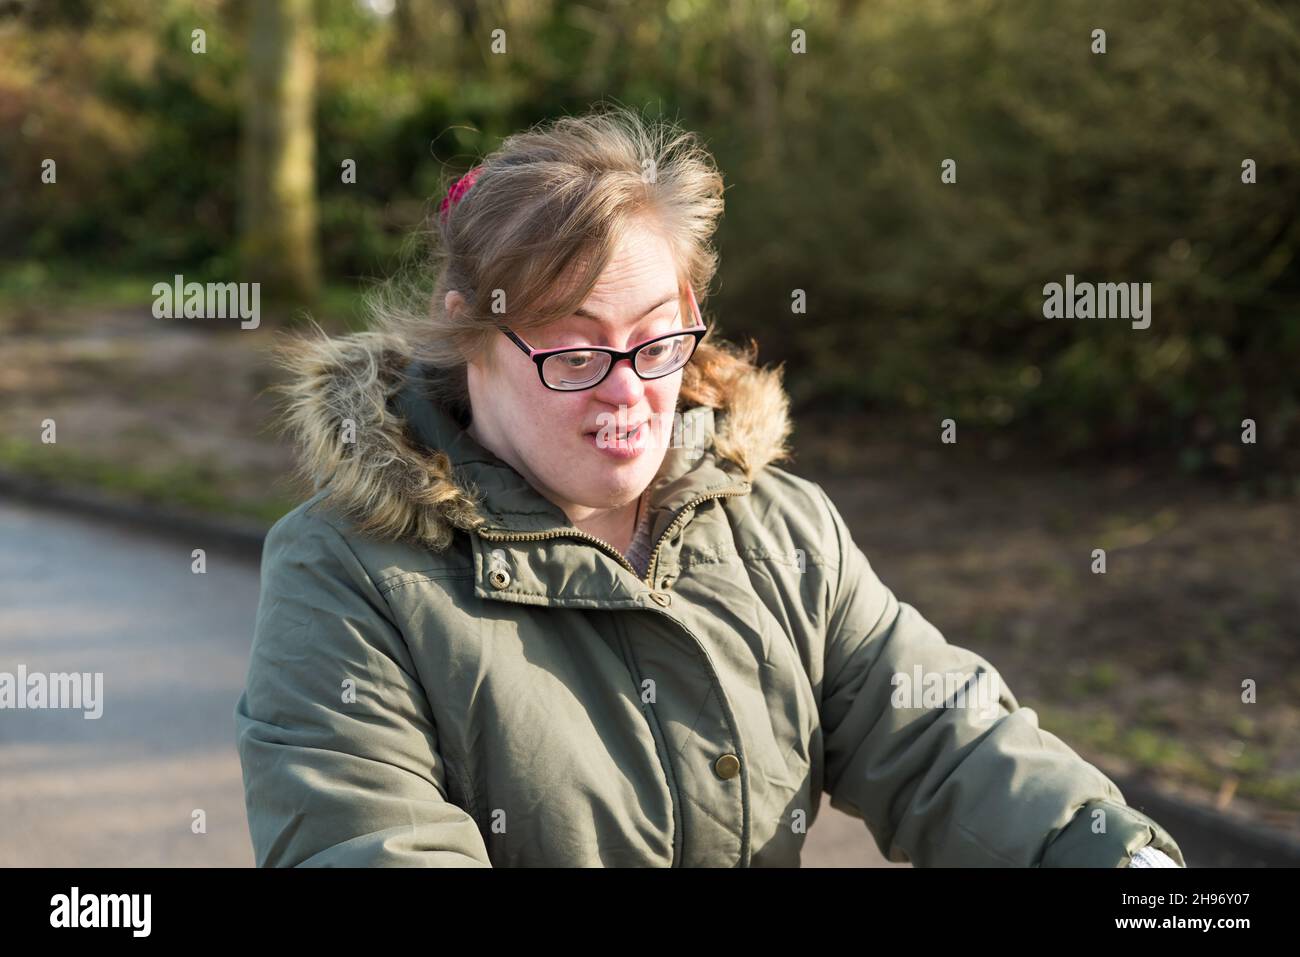 Tienen, Flandre / Belgique - 07 20 2018: Portrait d'une jeune femme blanche avec le syndrome de Down conduisant un tricycle à travers les champs Banque D'Images